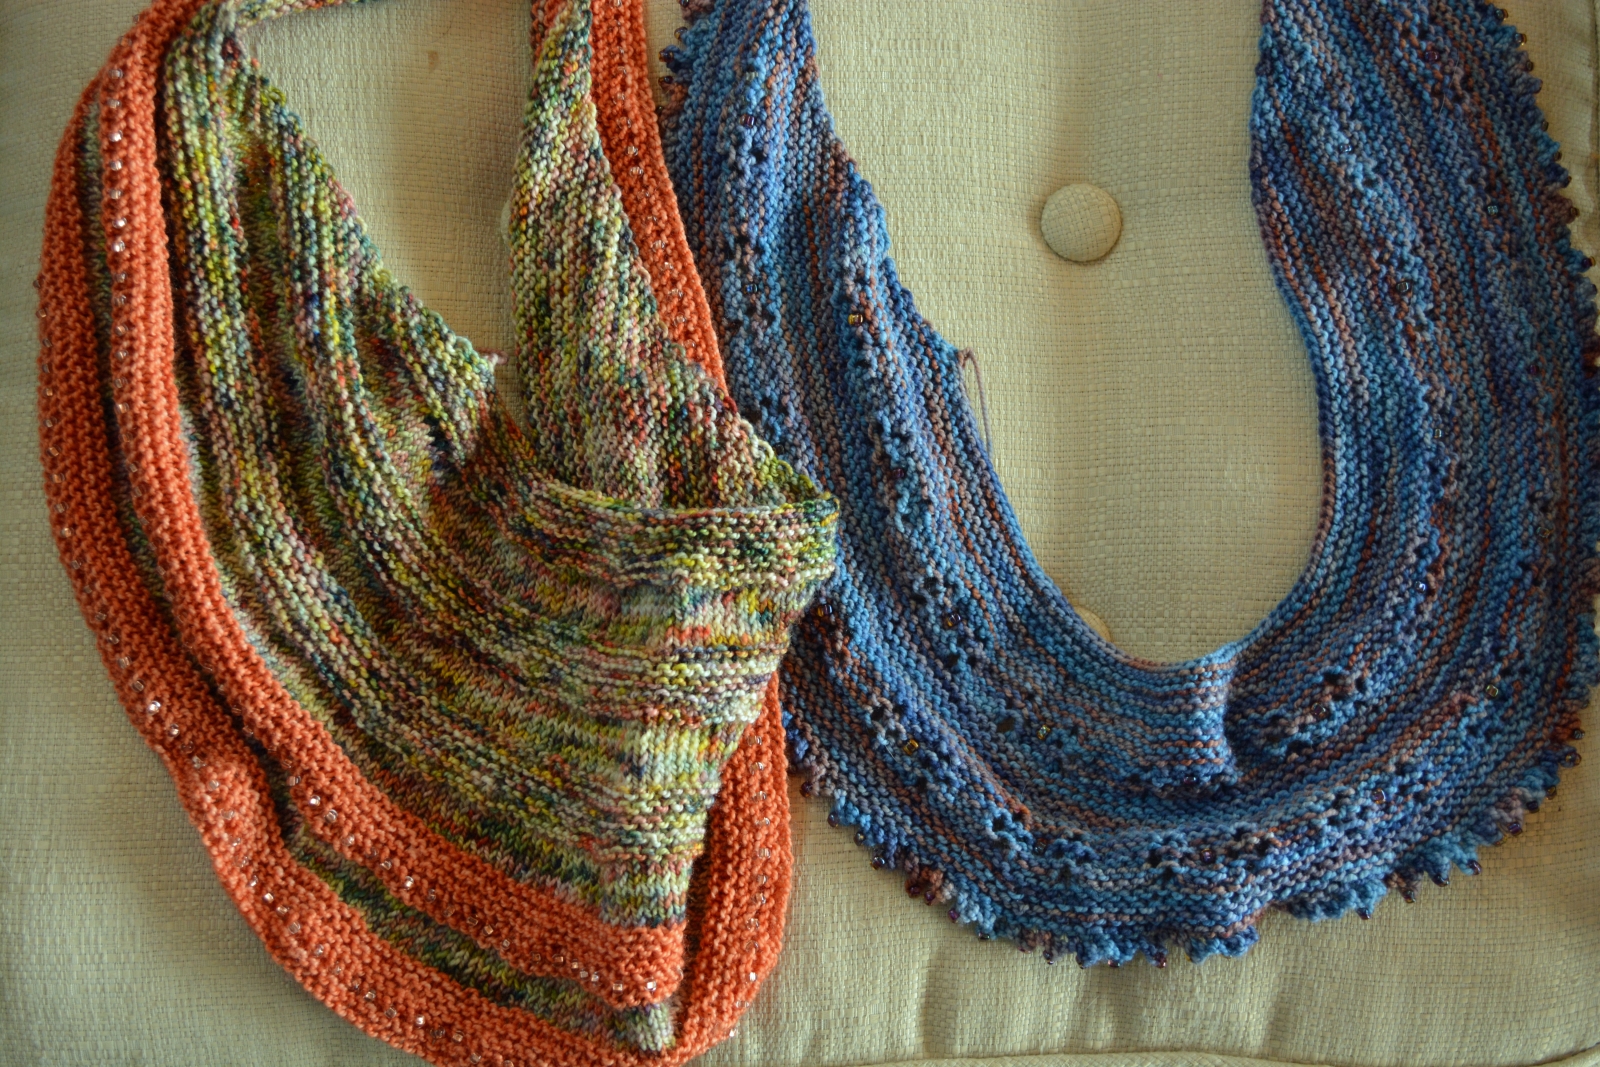 Koigu wool and beads scarves